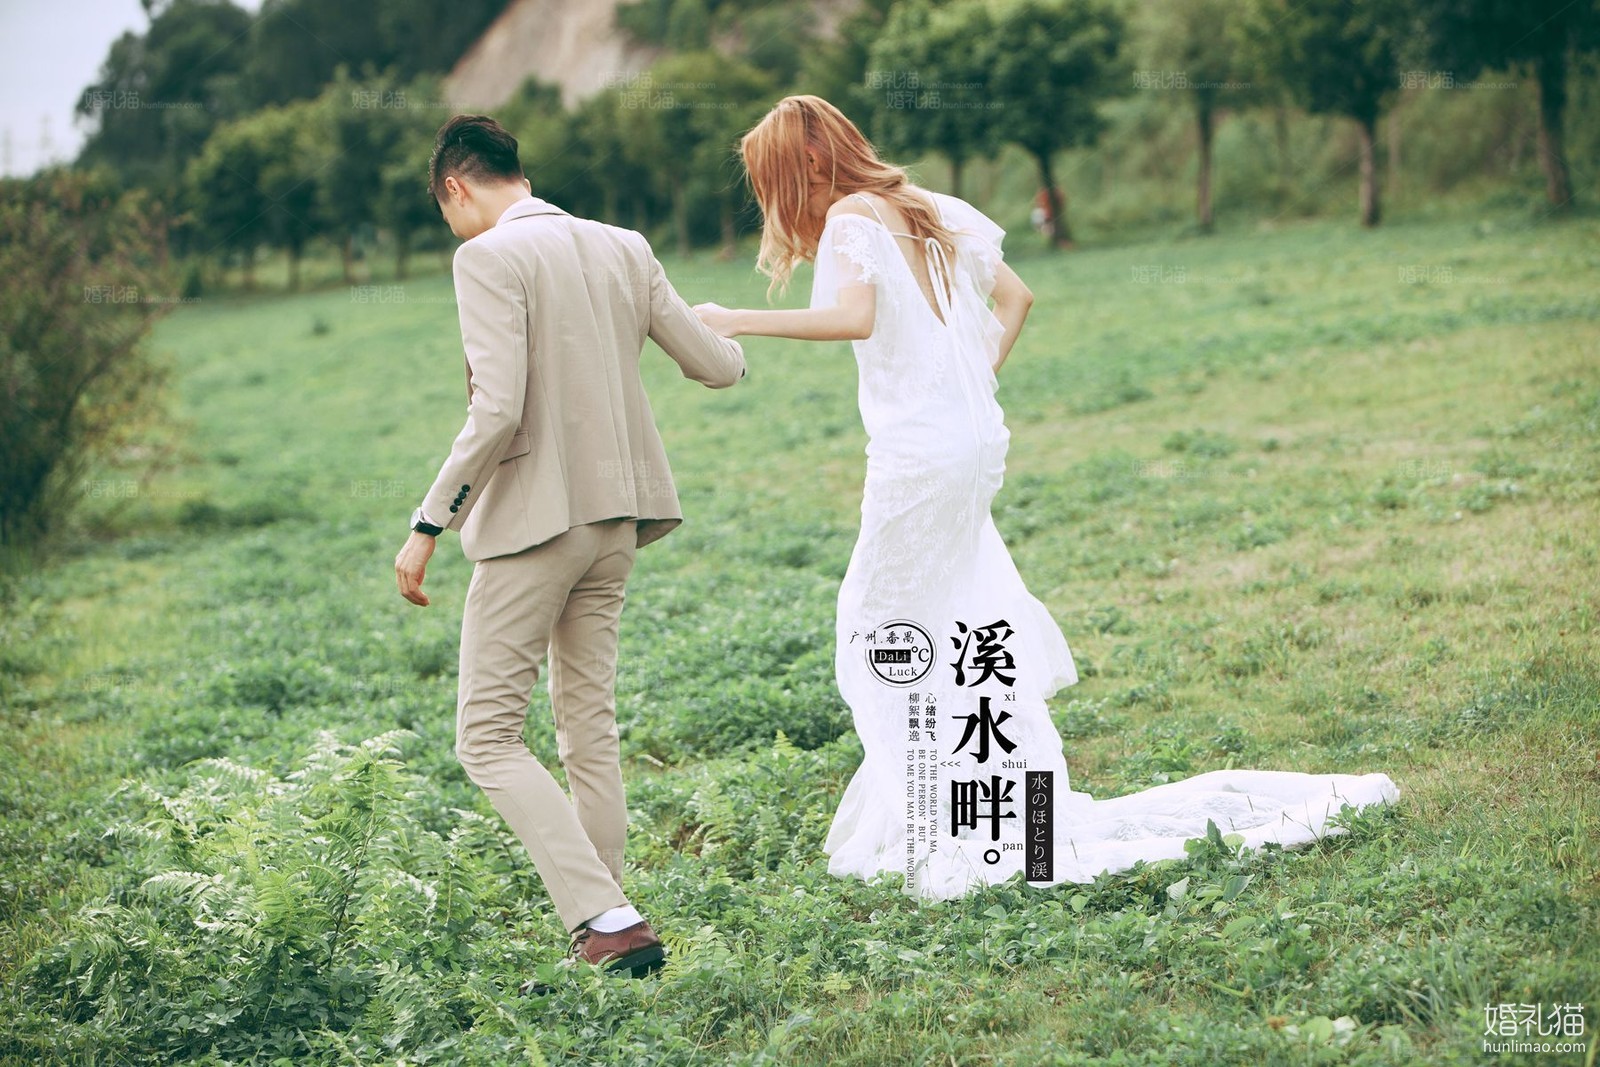 2017年7月广州婚纱照,,清远婚纱照,婚纱照图片